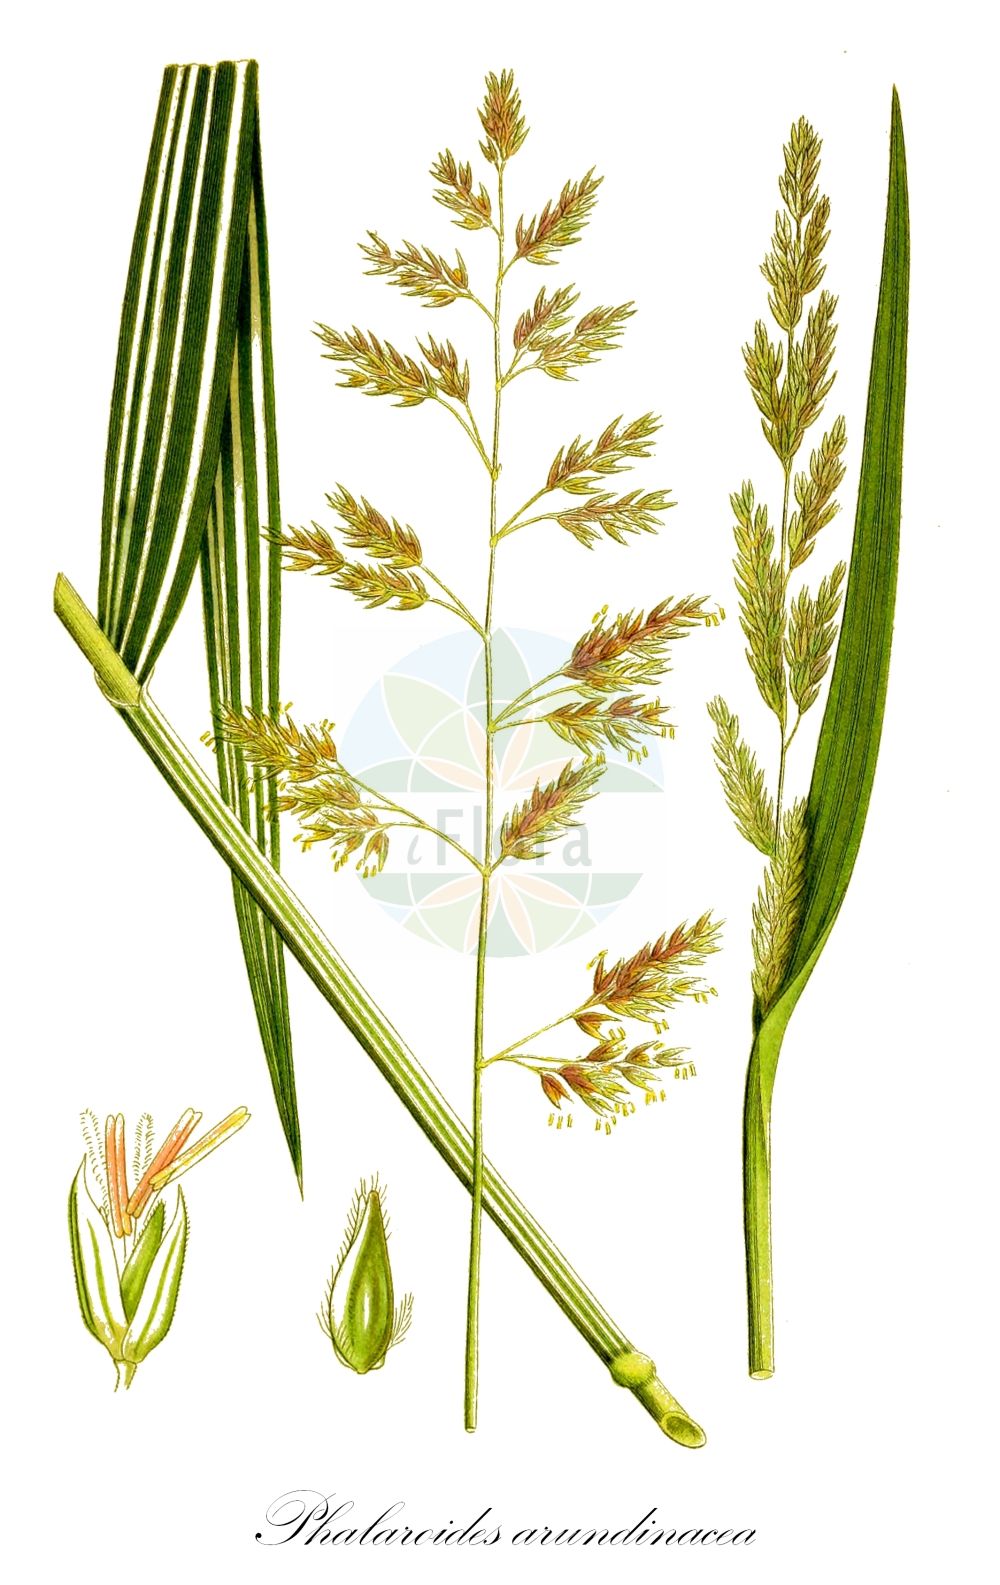 Historische Abbildung von Phalaroides arundinacea (Rohr-Glanzgras - Reed Canary-grass). Das Bild zeigt Blatt, Bluete, Frucht und Same. ---- Historical Drawing of Phalaroides arundinacea (Rohr-Glanzgras - Reed Canary-grass). The image is showing leaf, flower, fruit and seed.(Phalaroides arundinacea,Rohr-Glanzgras,Reed Canary-grass,Baldingera arundinacea,Digraphis arundinacea,Phalaris arundinacea,Phalaroides arundinacea,Typhoides arundinacea,Rohr-Glanzgras,Reed Canary-grass,Reedgrass,Phalaroides,Poaceae,Süßgräser,Grass family,Blatt,Bluete,Frucht,Same,leaf,flower,fruit,seed,Lindman (1901-1905))